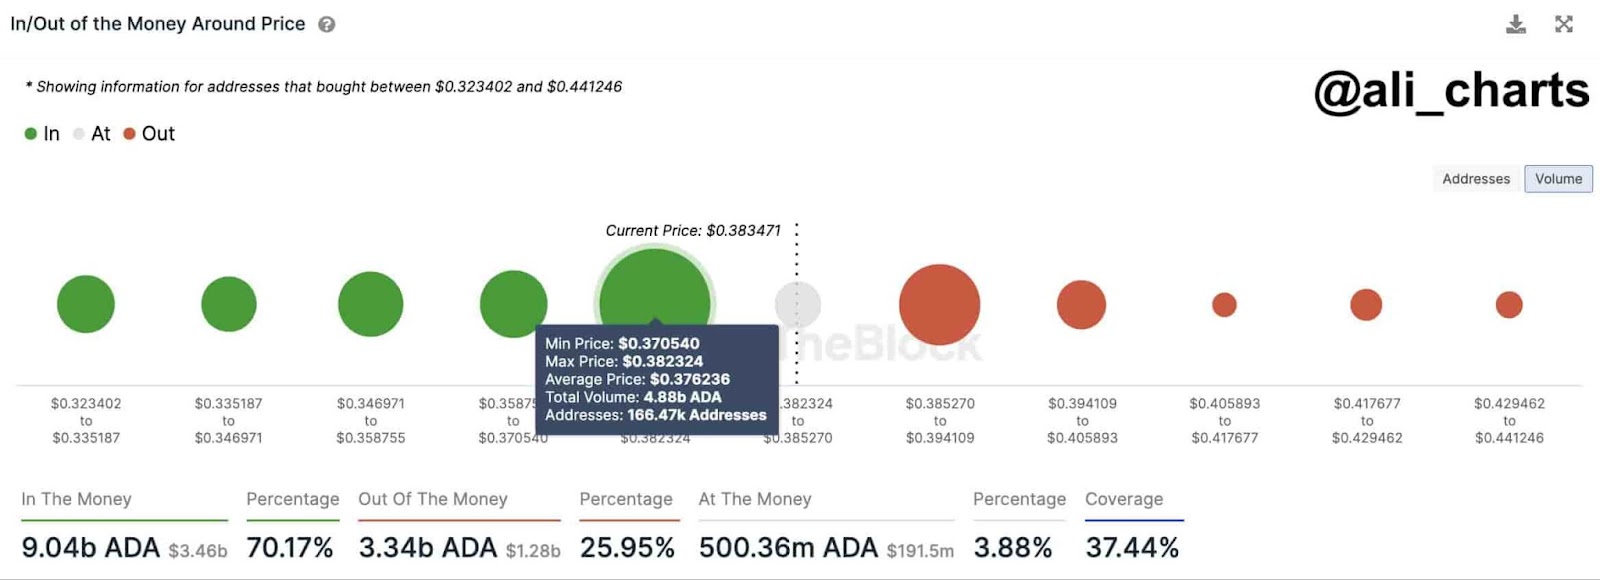 ADA'ya ilişkin para girişi/çıkışı verileri. Kaynak: Ali Martinez